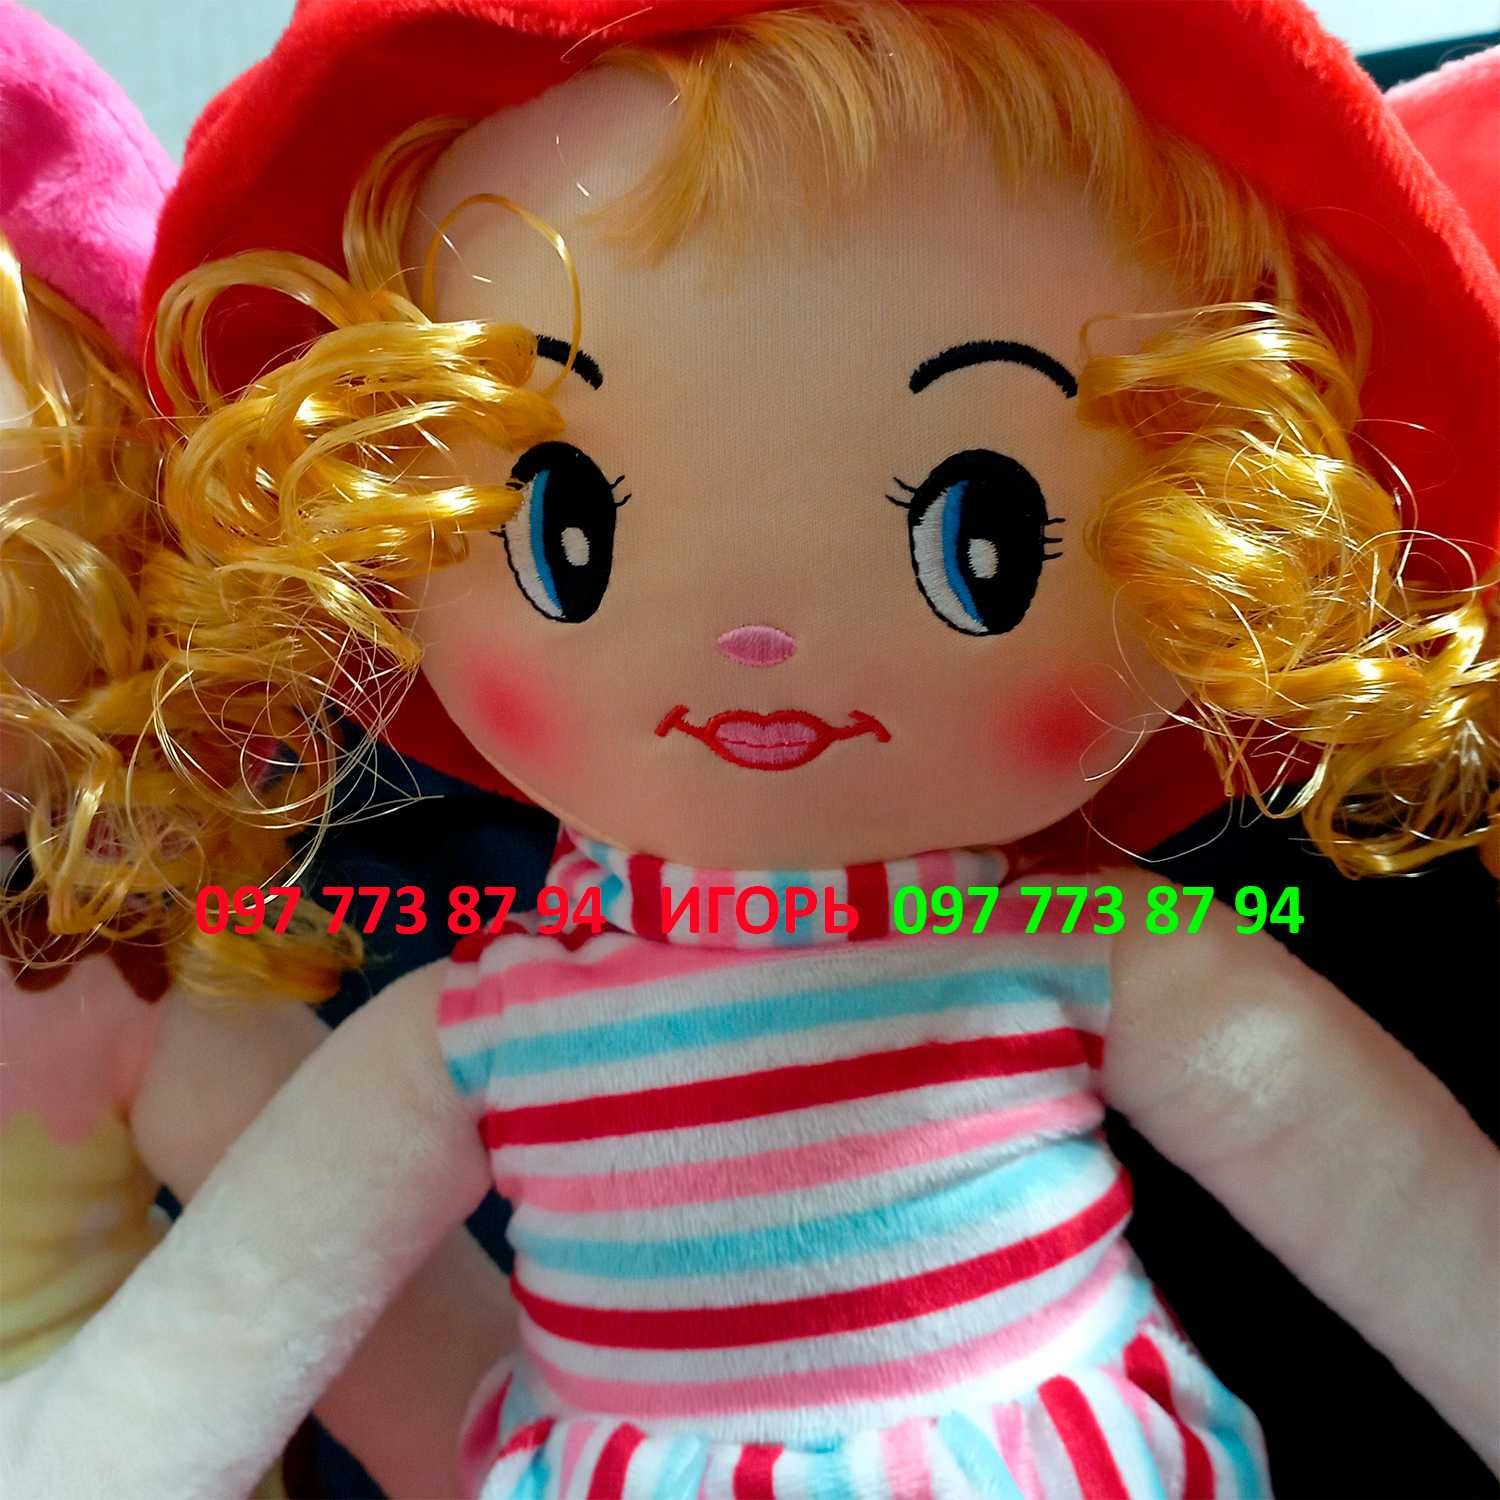 Мягконабивная кукла "София" 40 cm. Просто прелесть